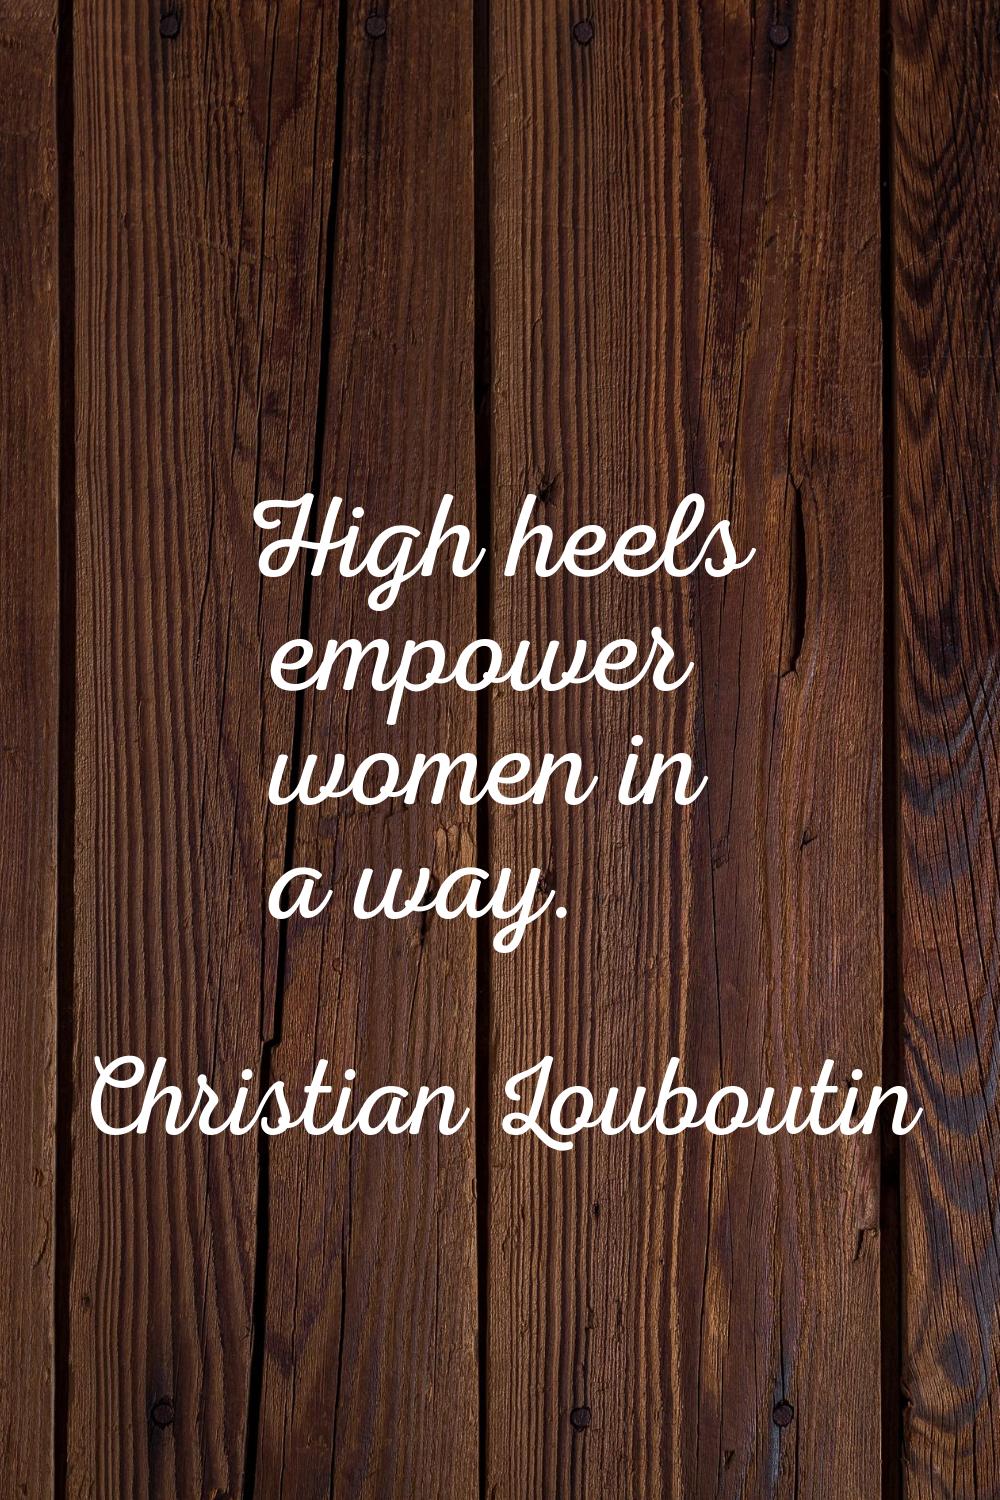 High heels empower women in a way.